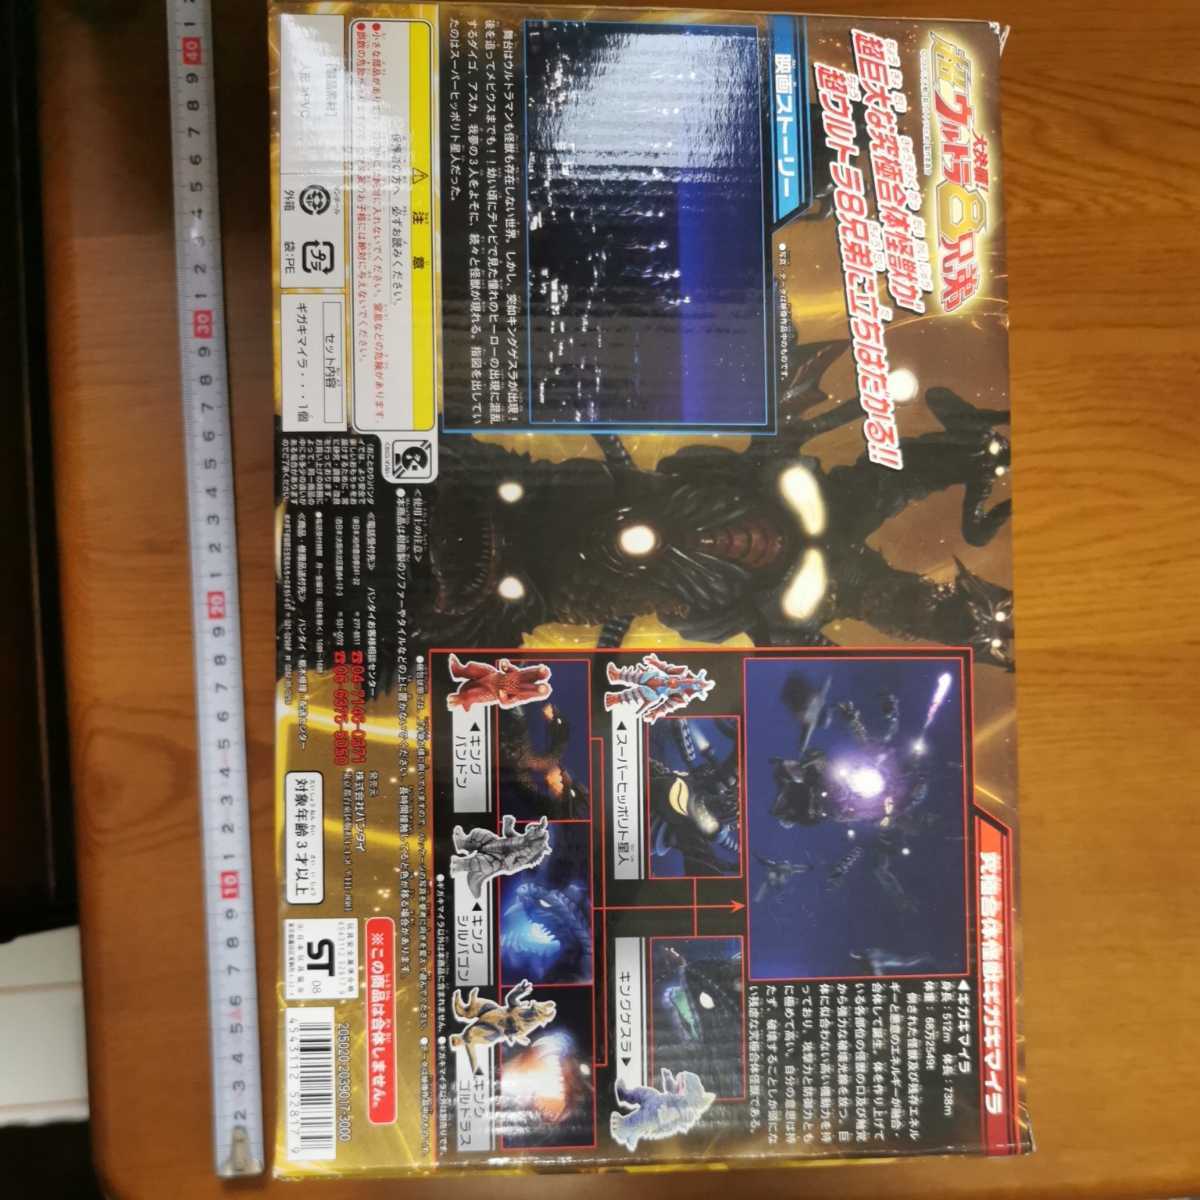  театр версия Ultraman Tiga Dyna Gaya Ultra 8 родственная Ultra монстр серии Giga химера с коробкой sofvi фигурка 